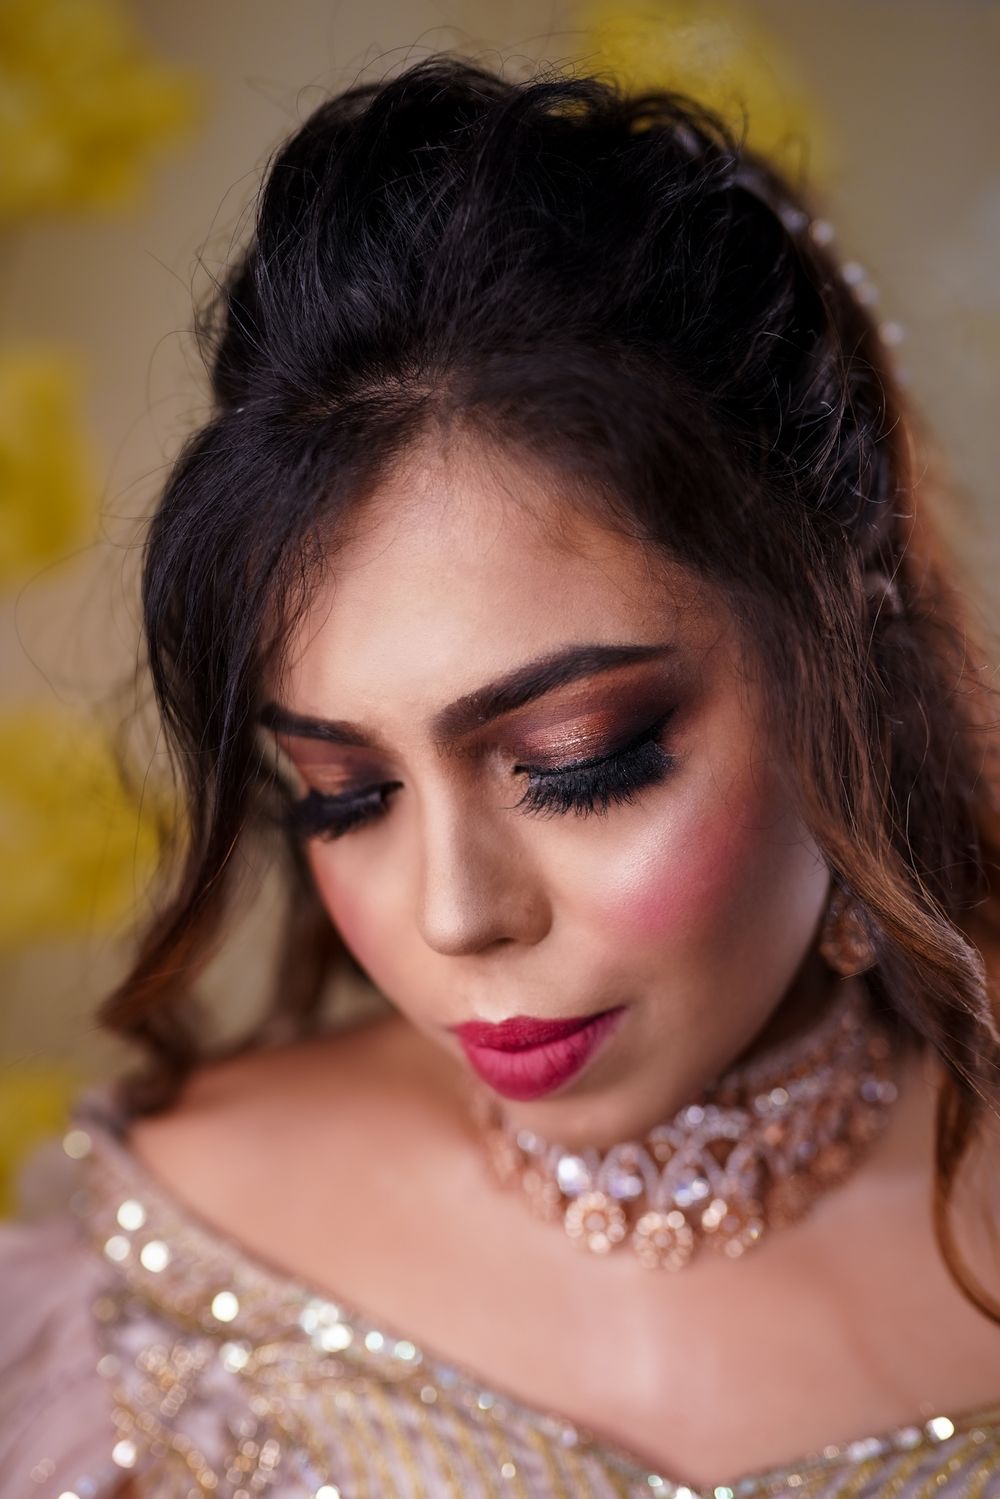 Photo By Prerana's Make-up Artistry - Bridal Makeup